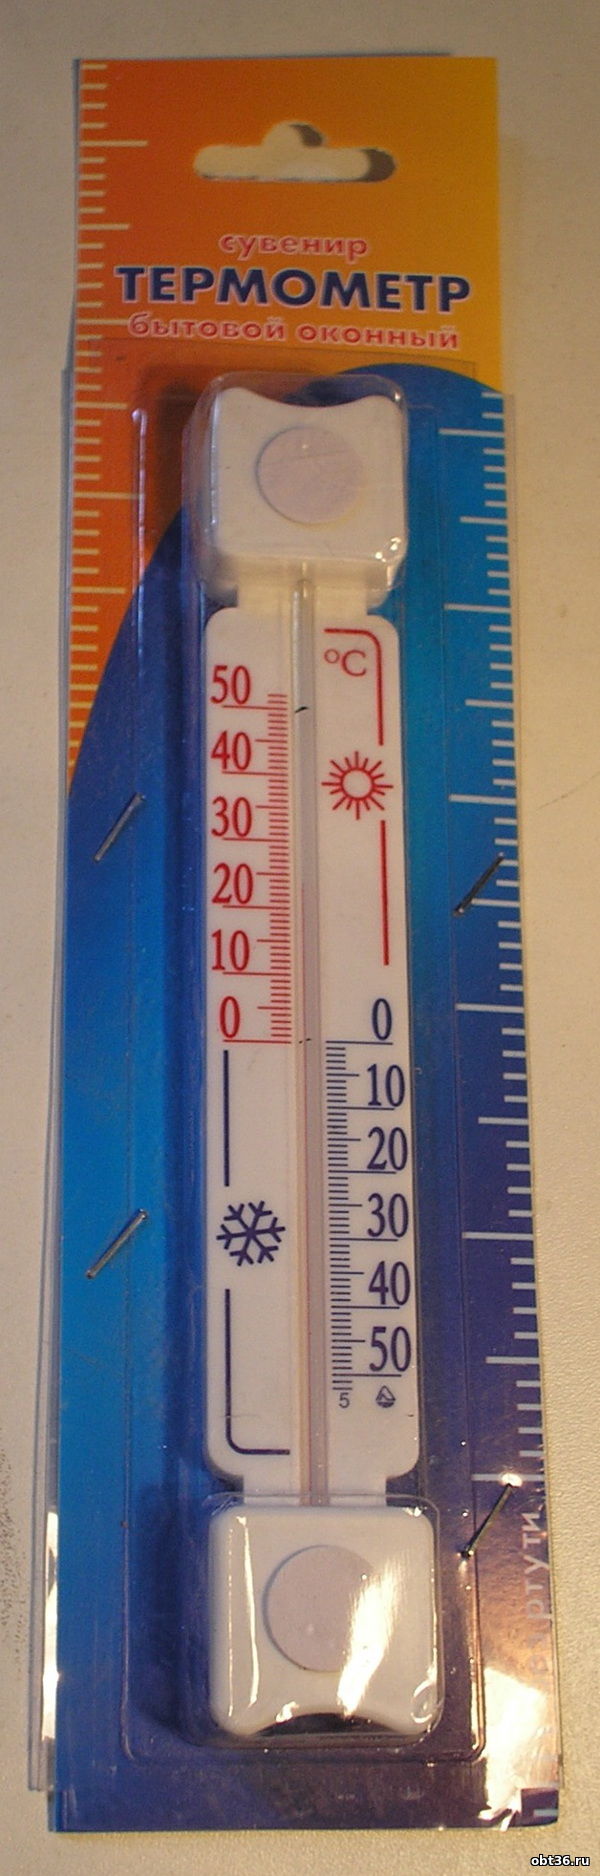 термометр тб-3-м1 исполнение 5д г.лохвица полтавская область